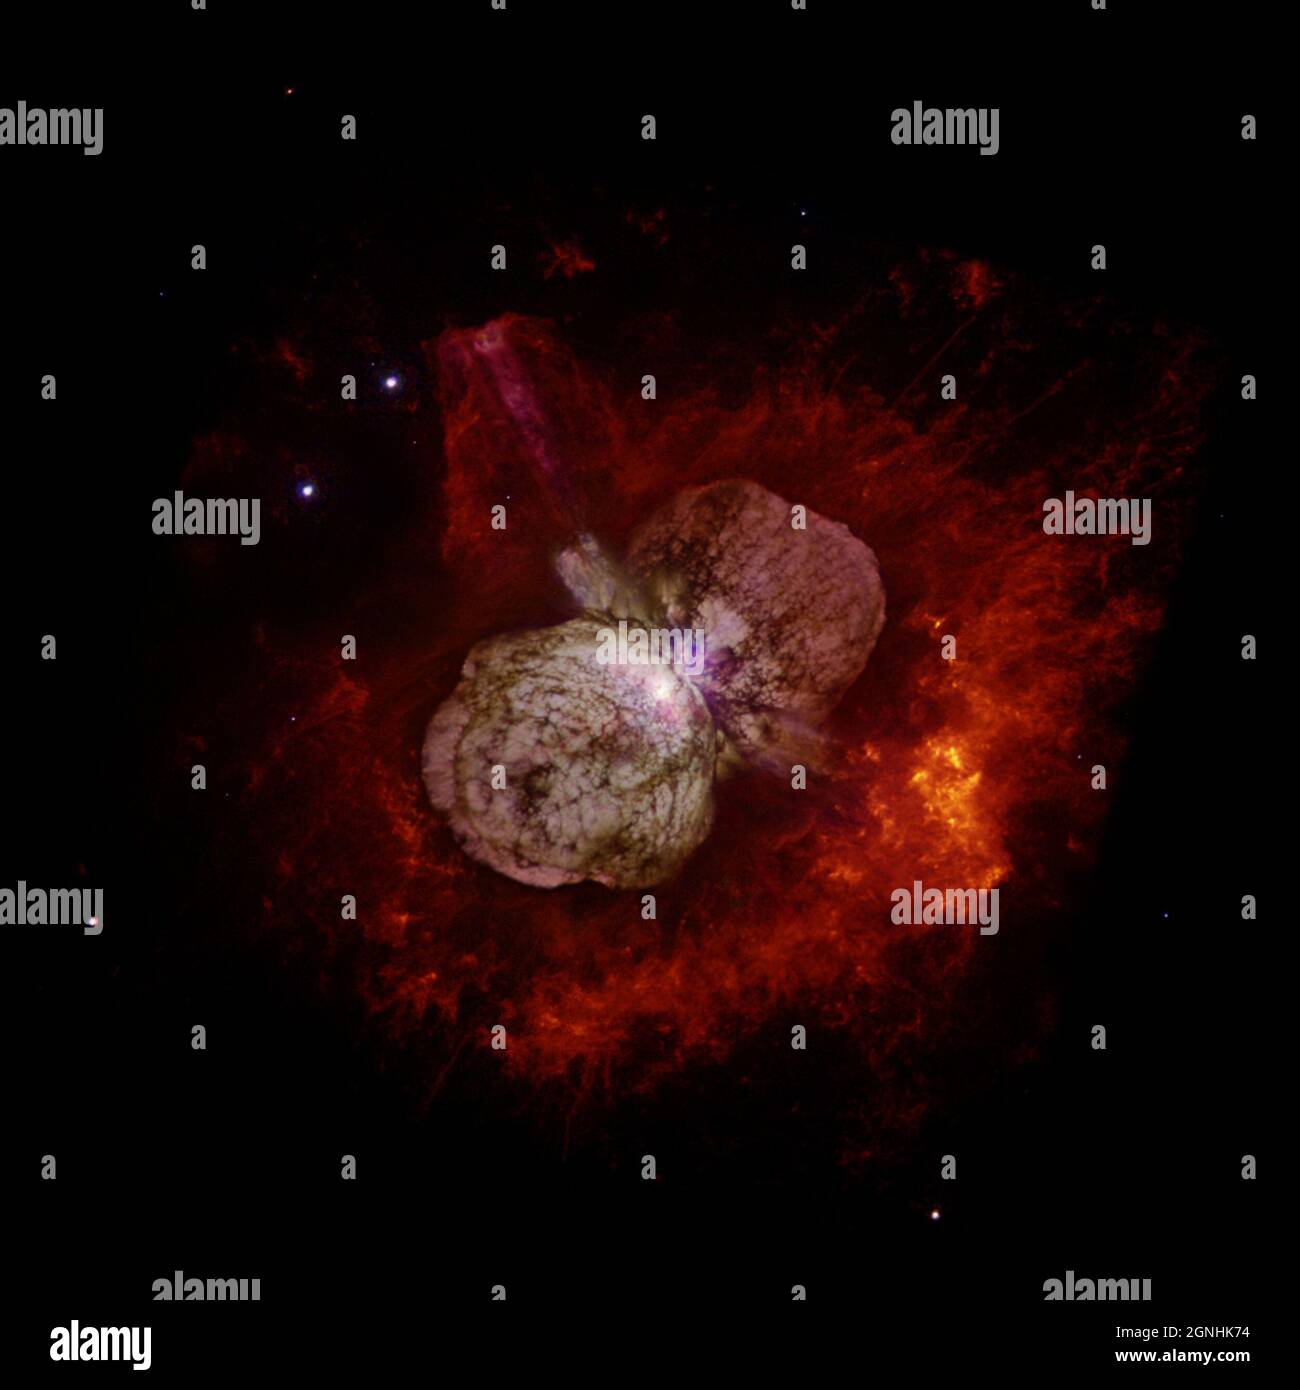 L'imponente stella luminosa ETA Carina. La stella 100x la massa e 5,000,000 volte la luminosità del sole. I due lobi sono noti come la Nebula Homunculus e consistono di massa espulsa in un'esplosione nel 1840. La stella alla fine crollerà come una supernova di tipo IIa massiccia. . Fonte immagine NASA/ESA Hubble Space Telescope Foto Stock